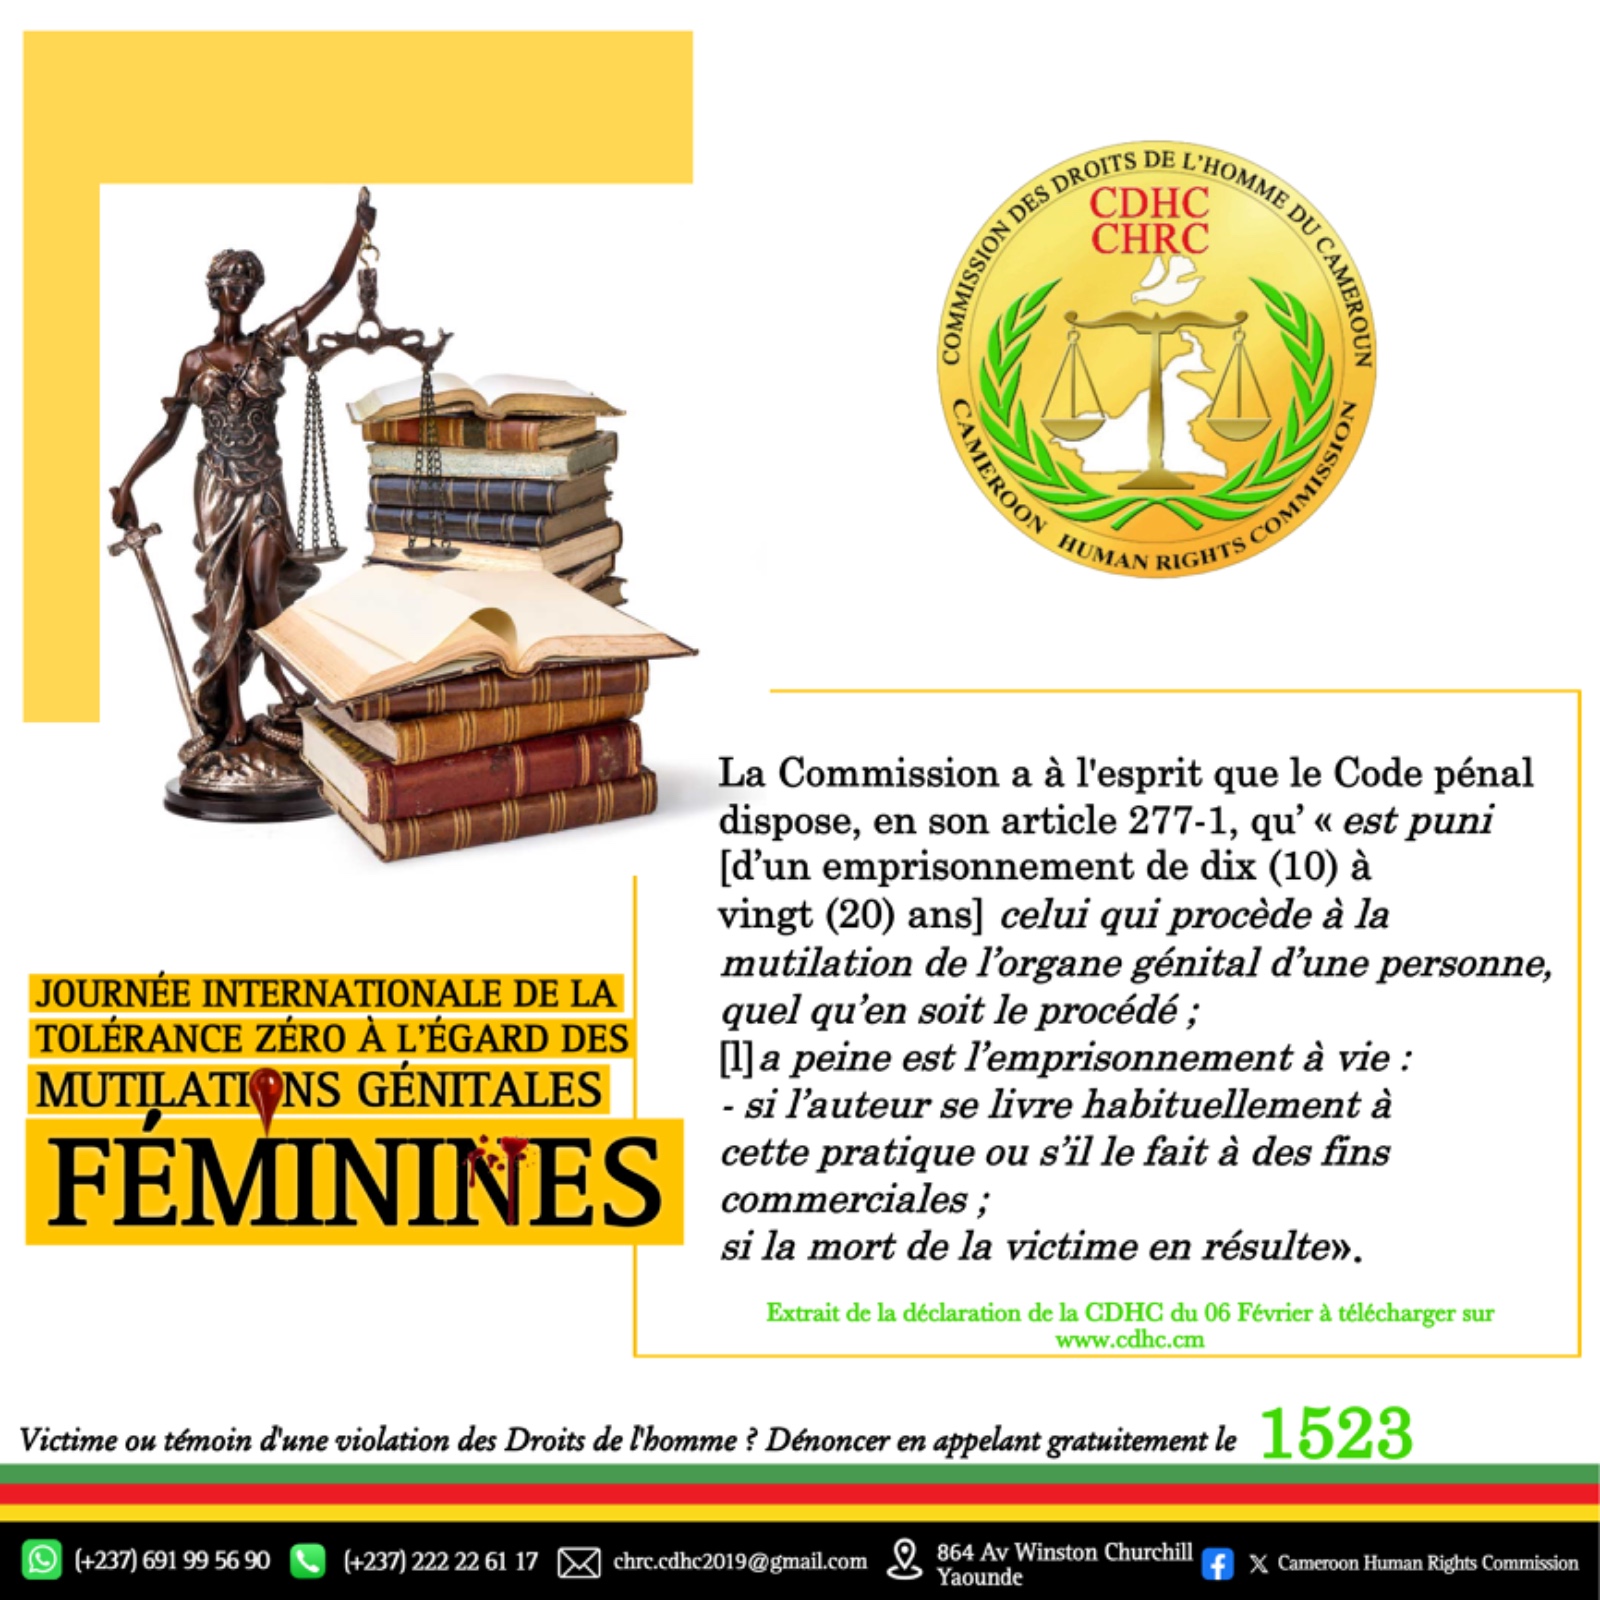 Journée Internationale de Tolérance zéro  des mutilations Génitales féminines: La CDHC se prononce